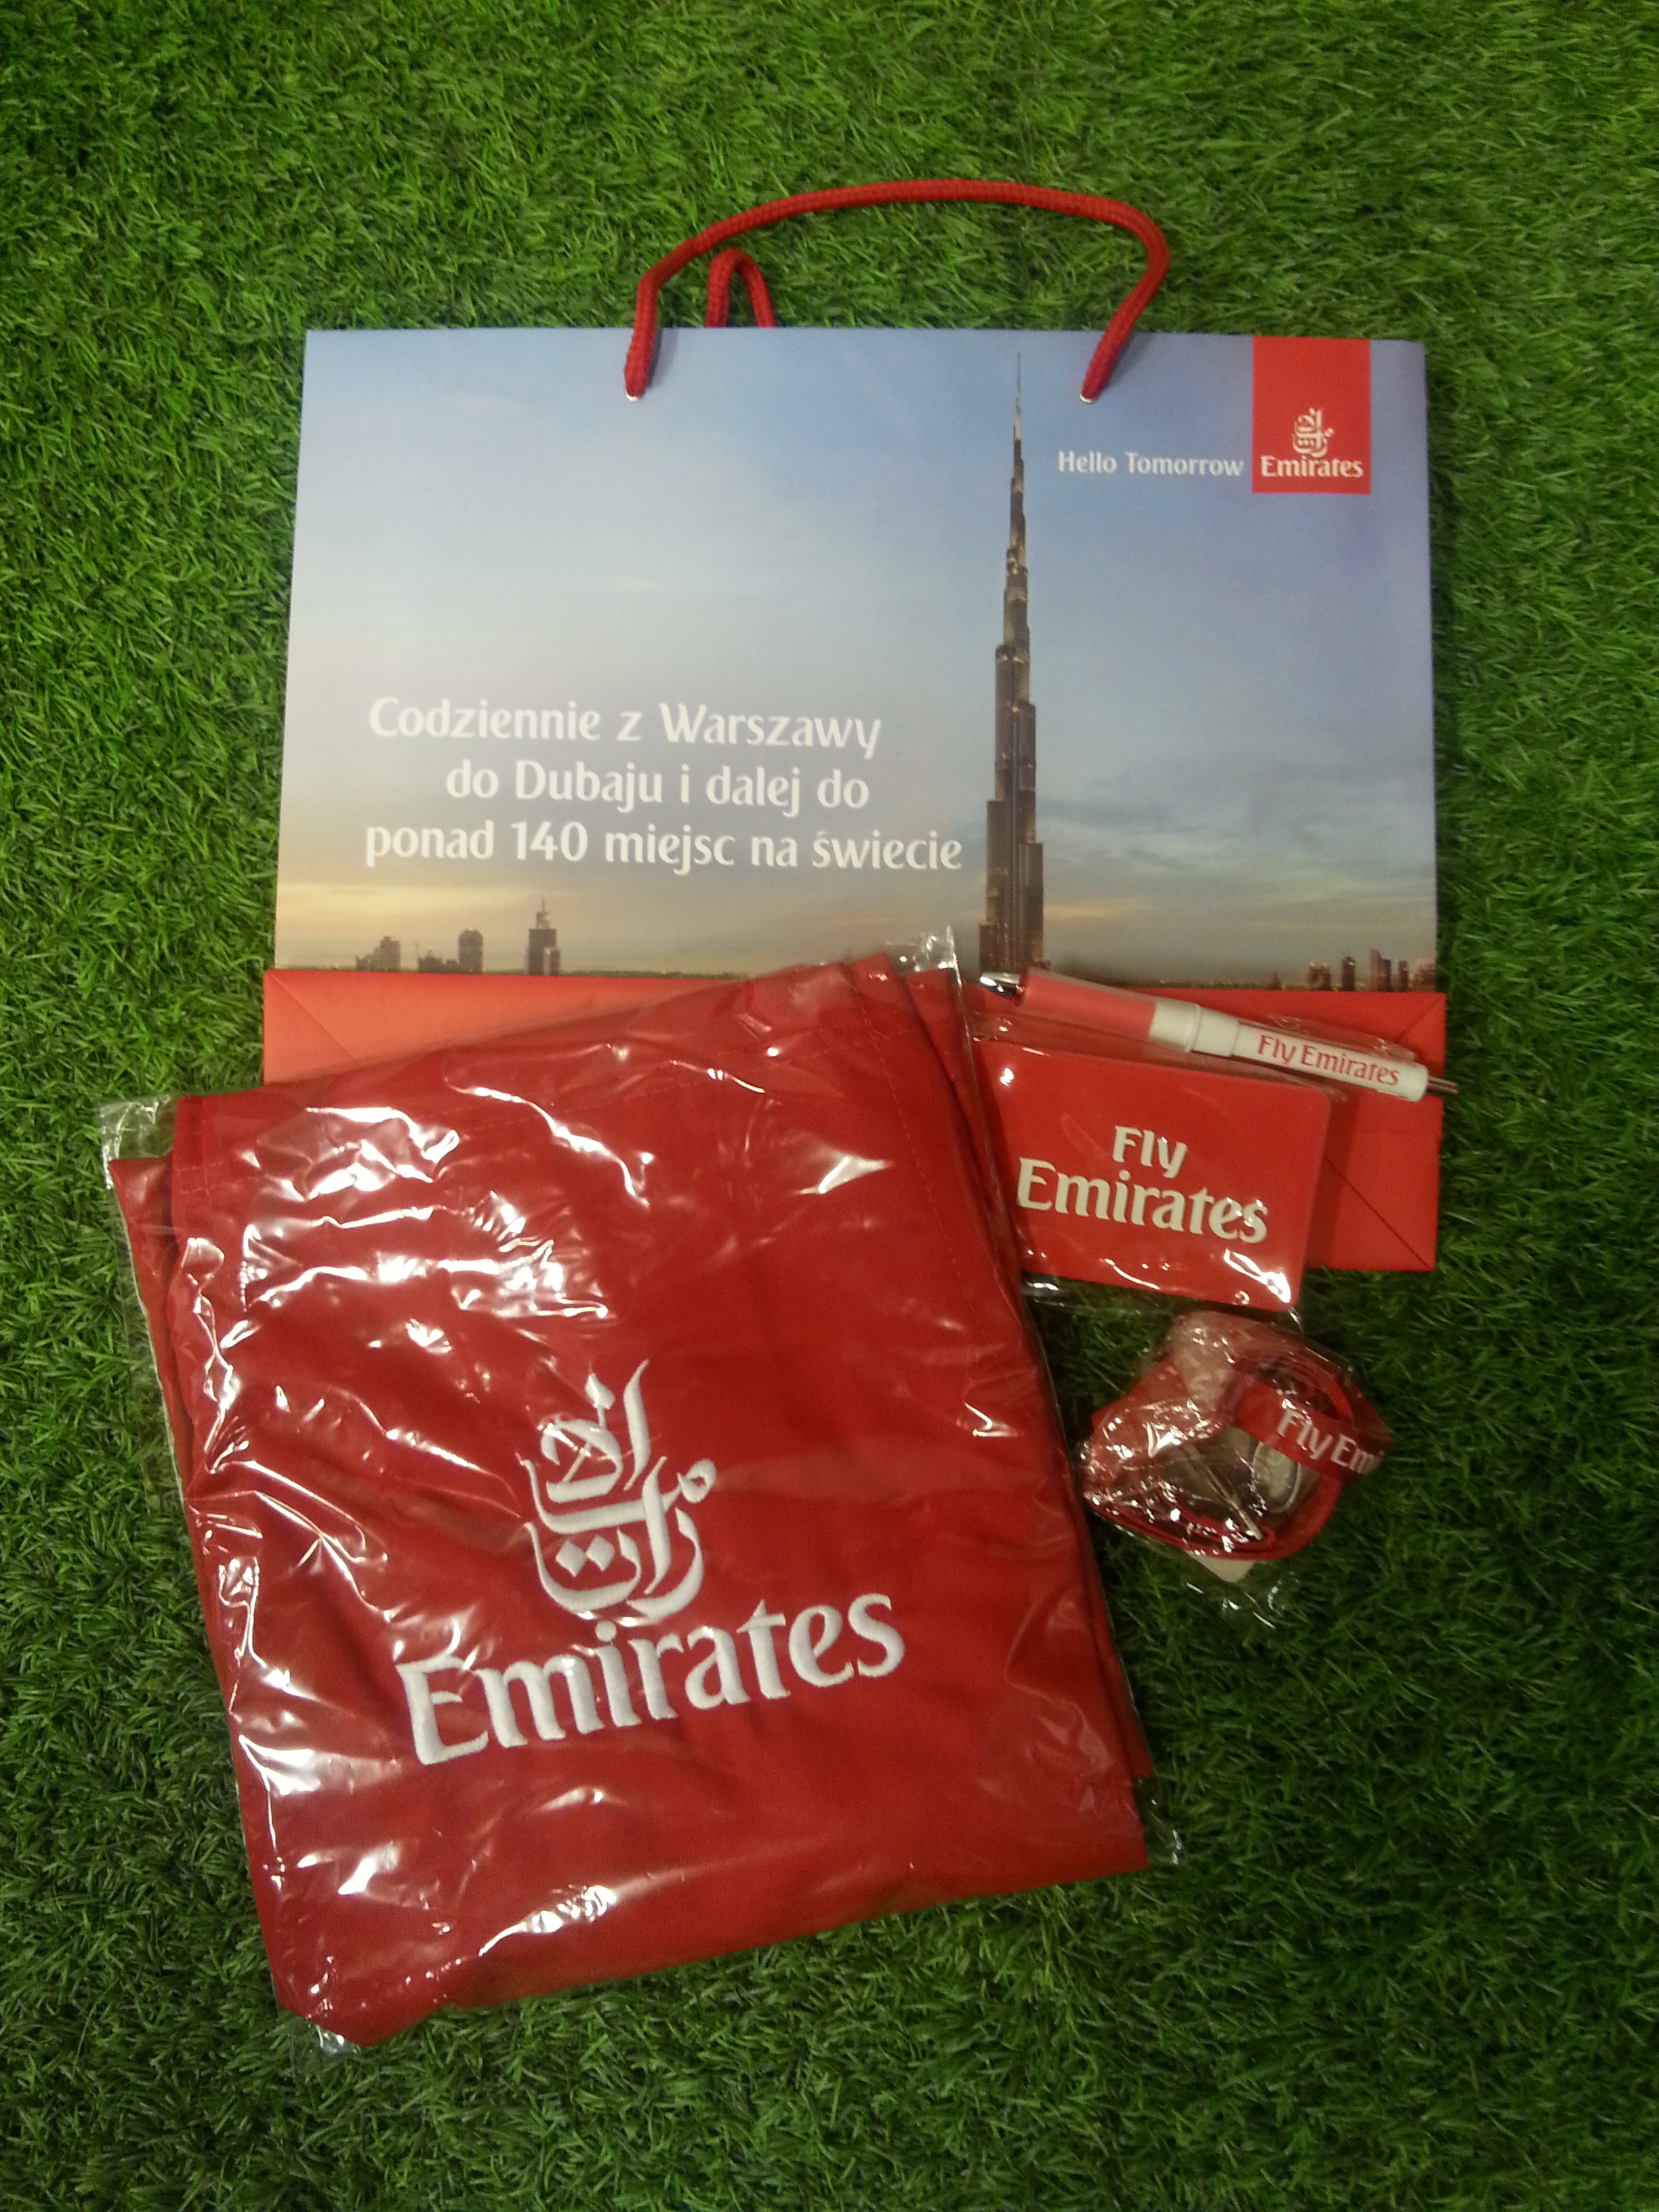 Emirates-nagrody-oryginal